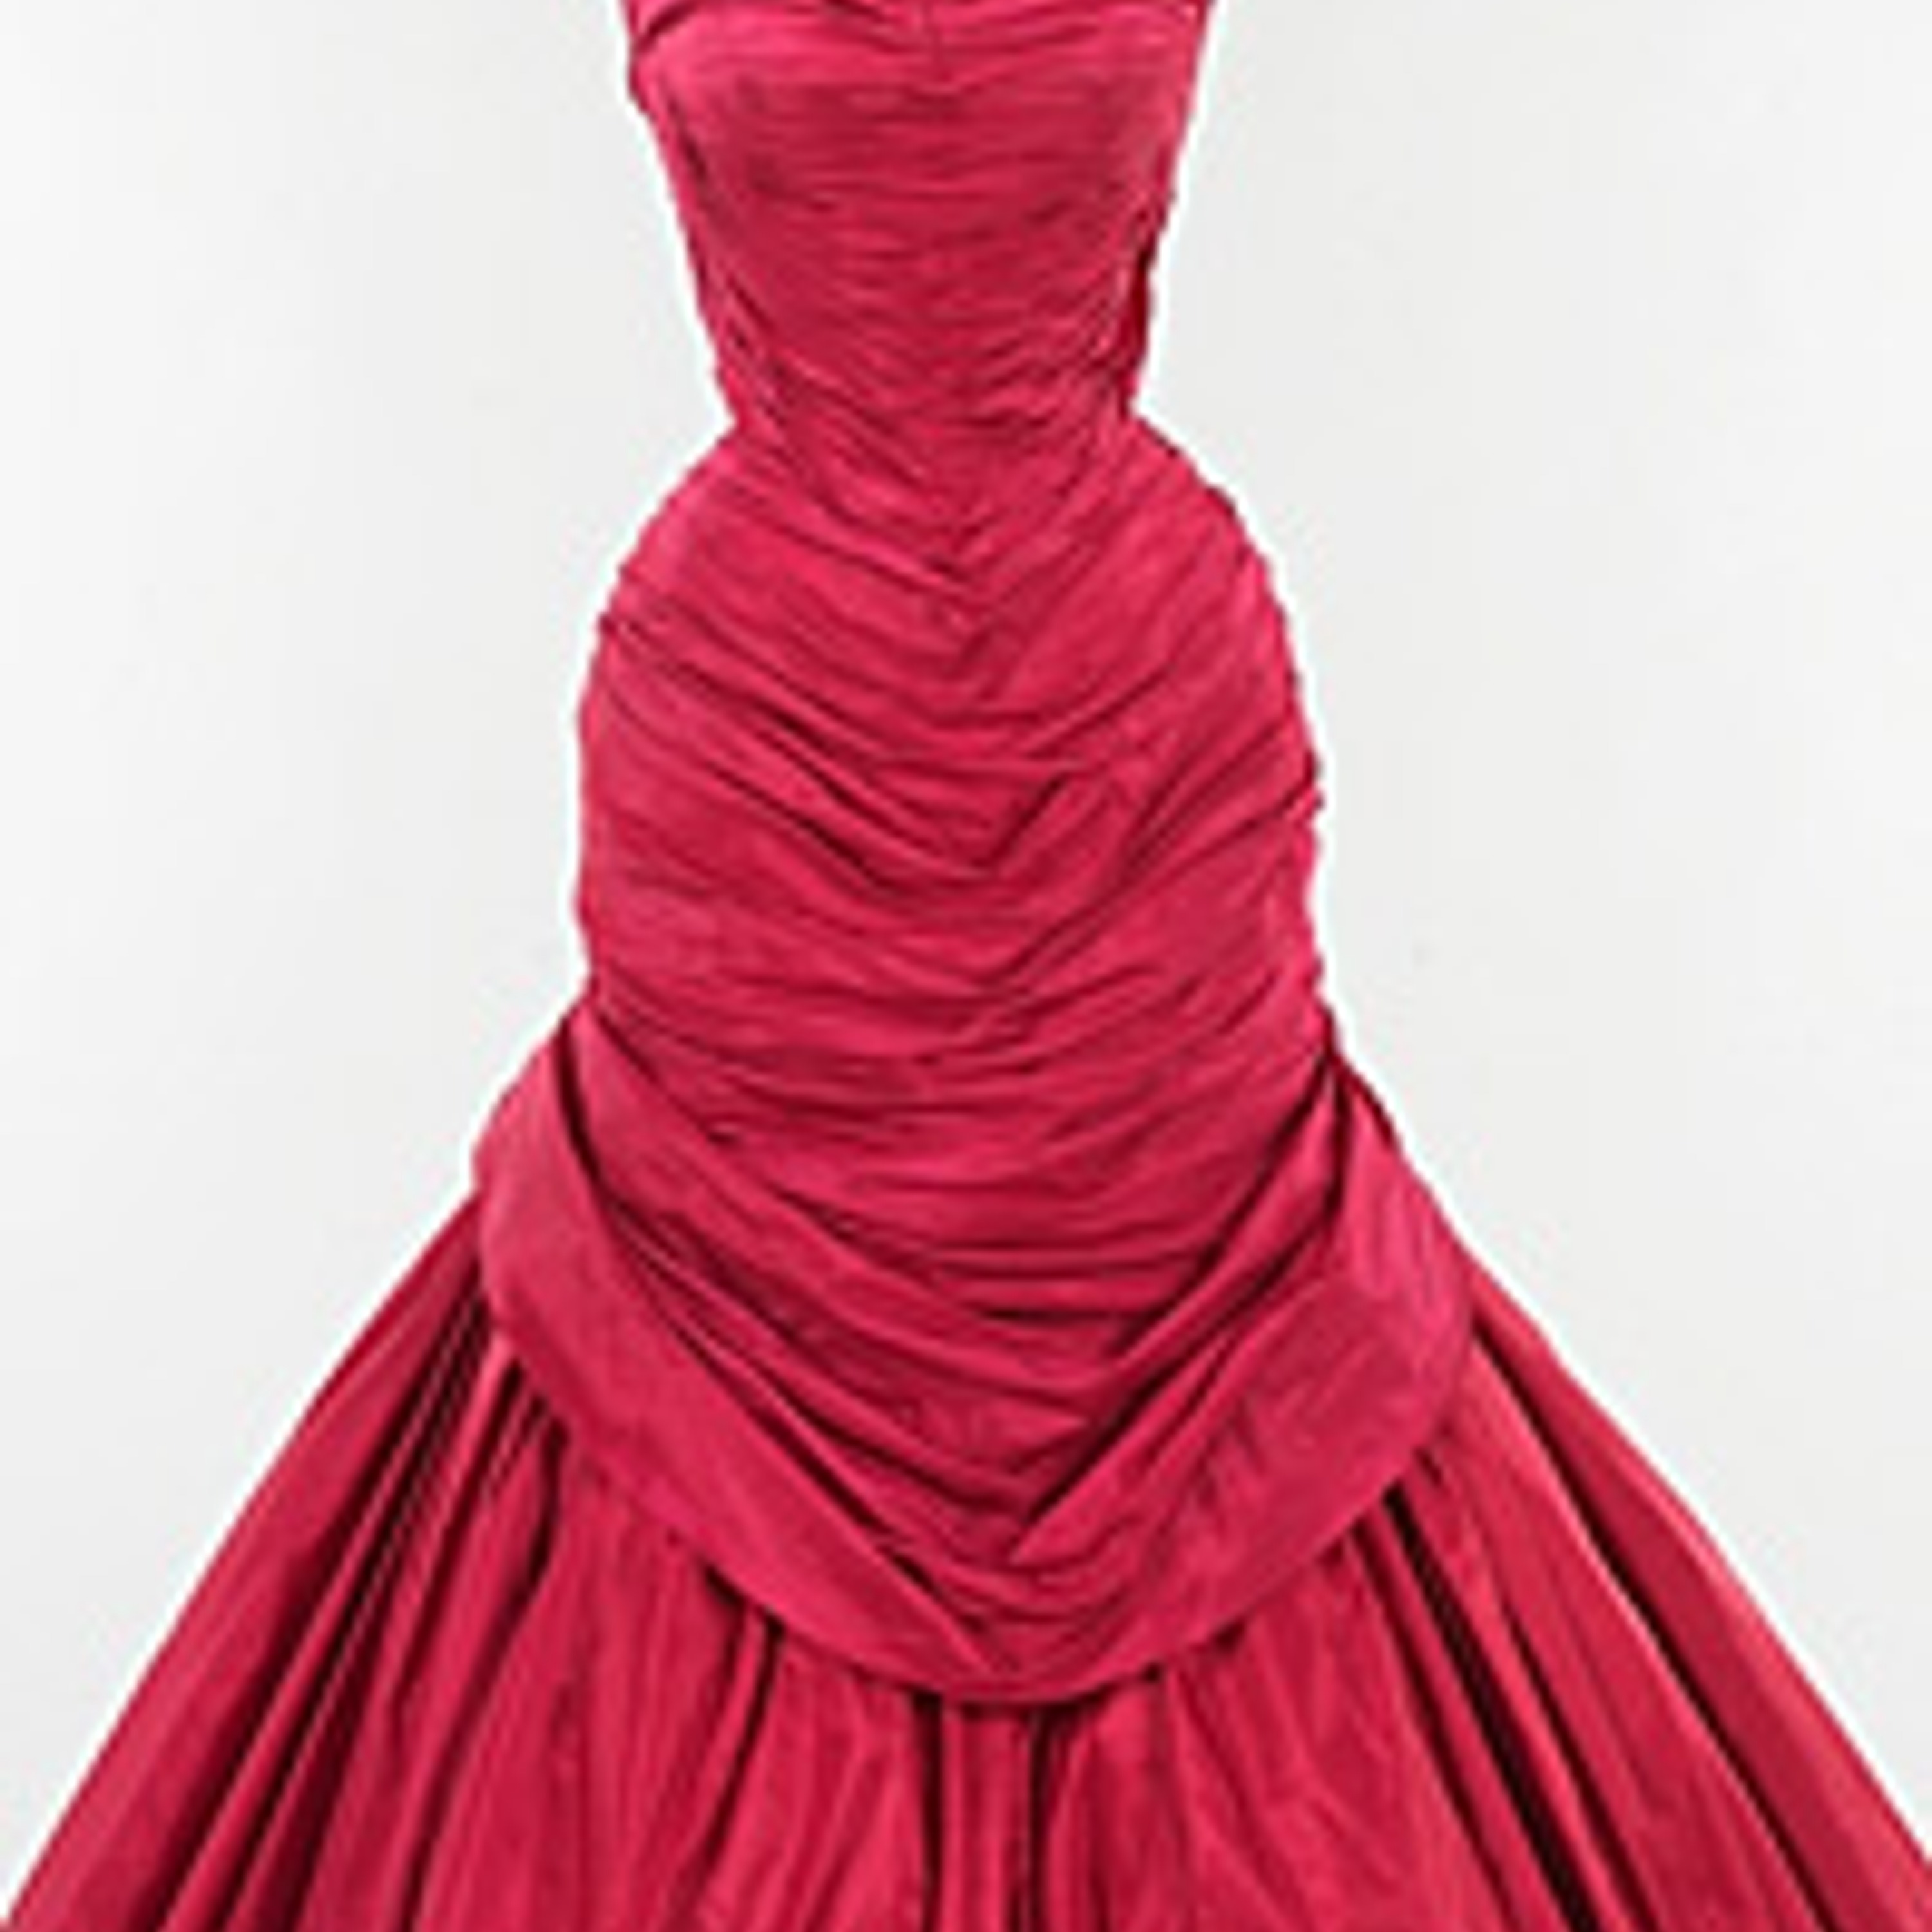 Фото 23. Платье "Дерево". Красная тафта, белый атлас, красный, розовый, белый тюли. 1955 г.